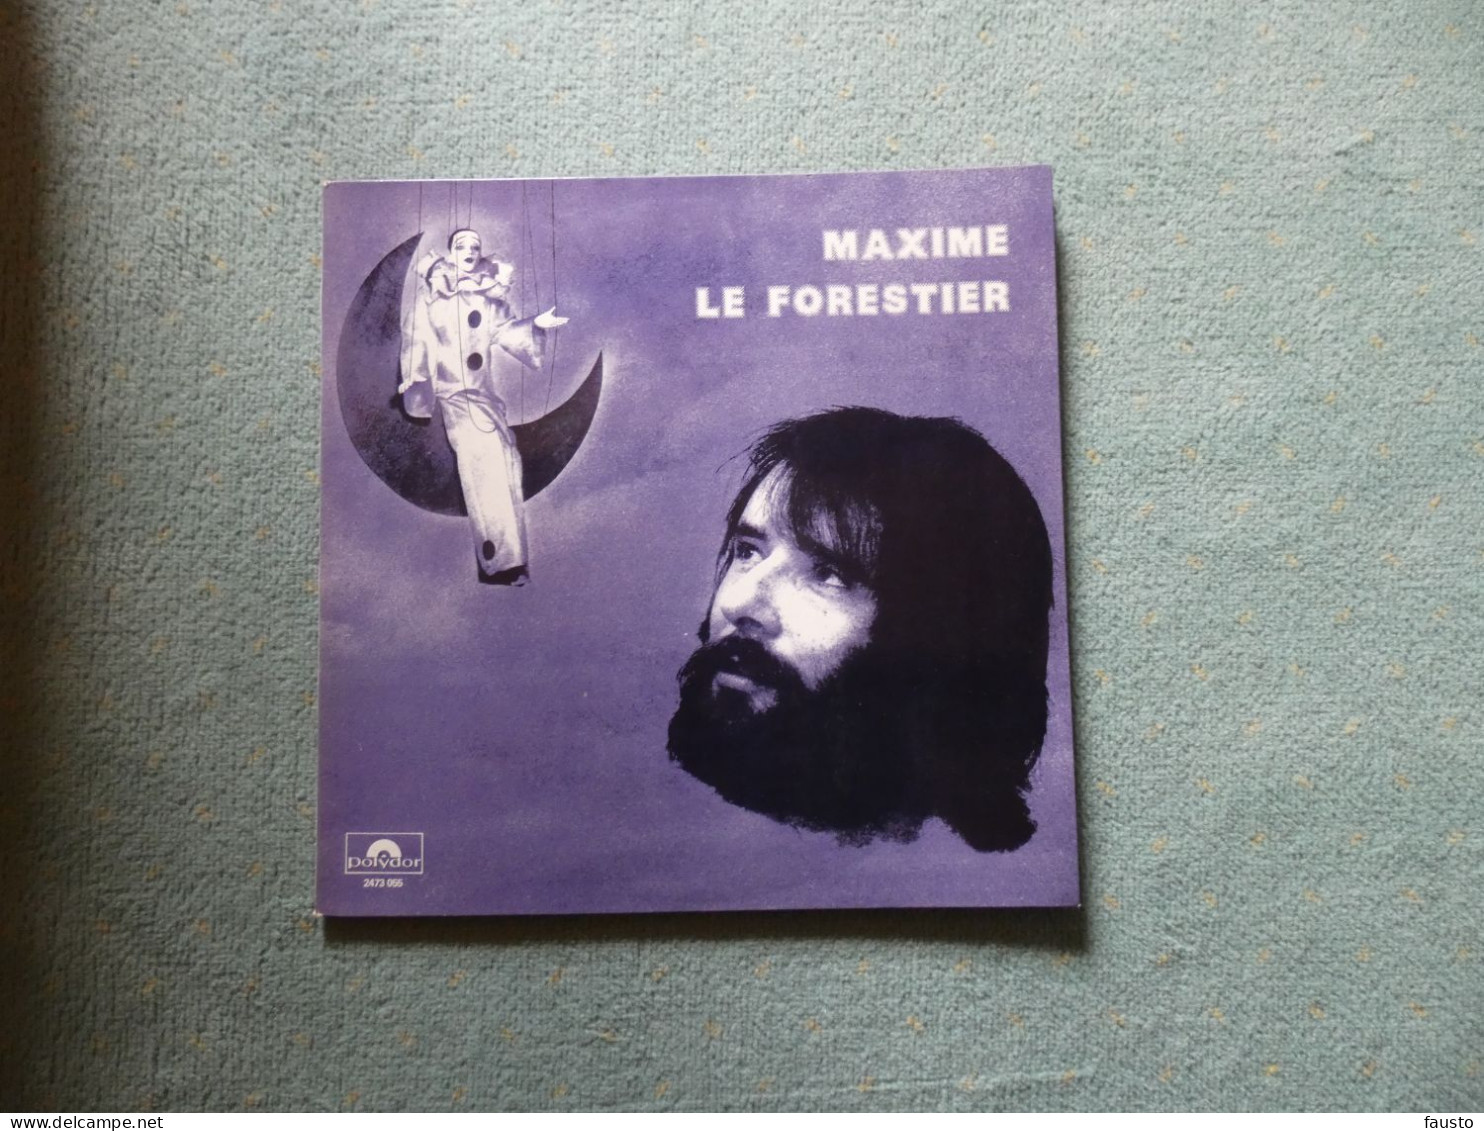 Maxime Le Forestier Polydor 2473 055   1976 - Altri - Francese